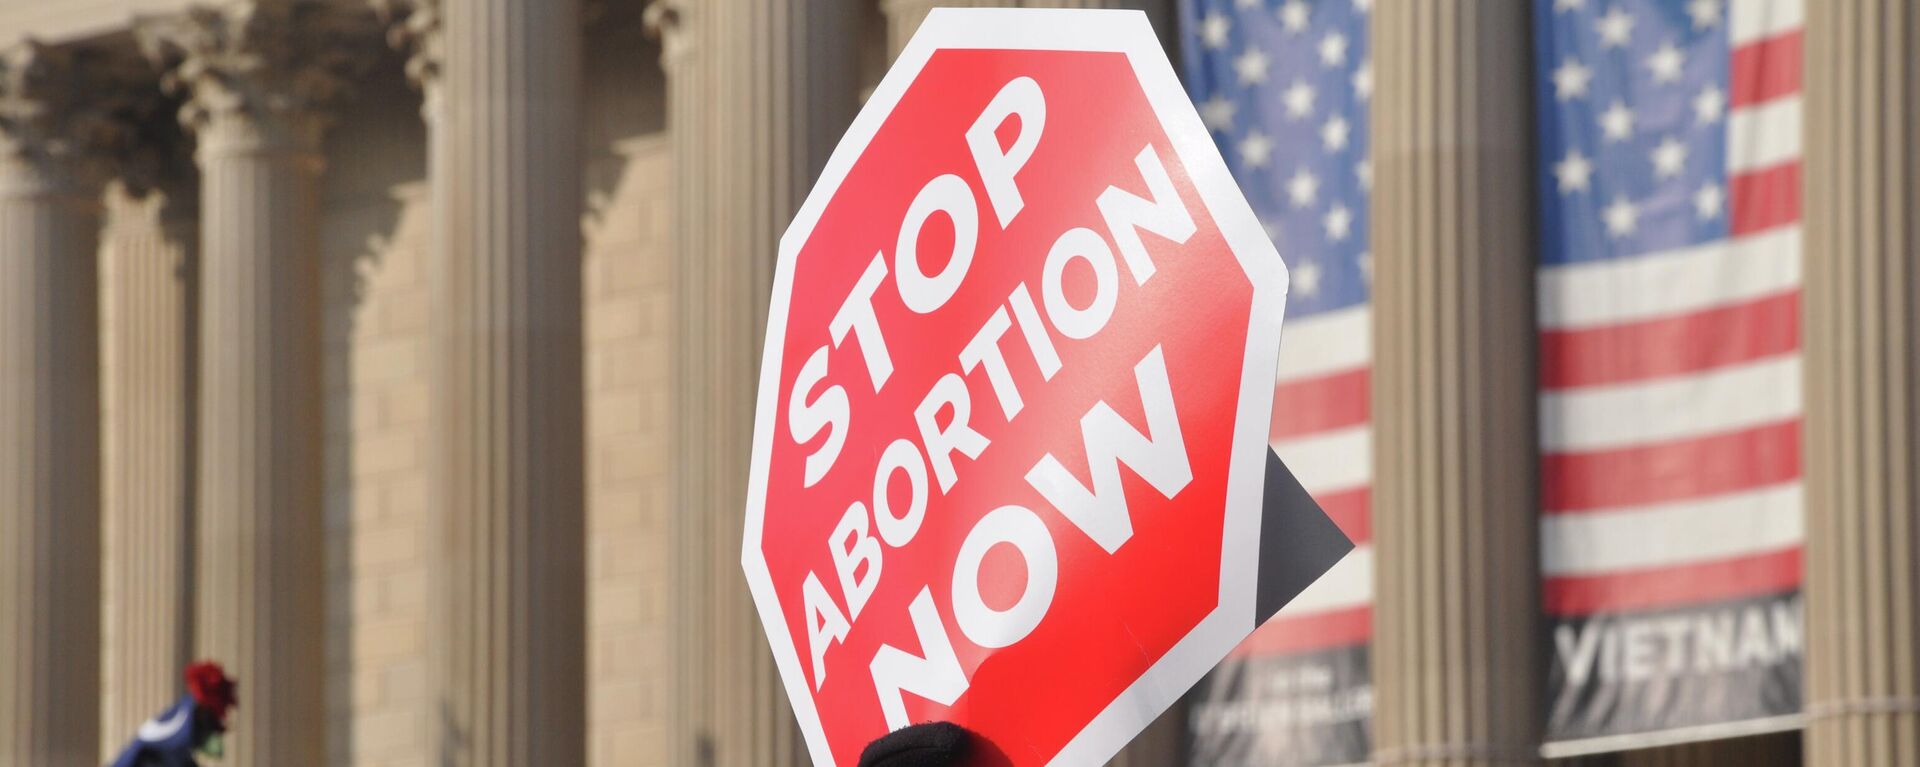 Protesta en contra del aborto en Estados Unidos - Sputnik Mundo, 1920, 05.04.2022